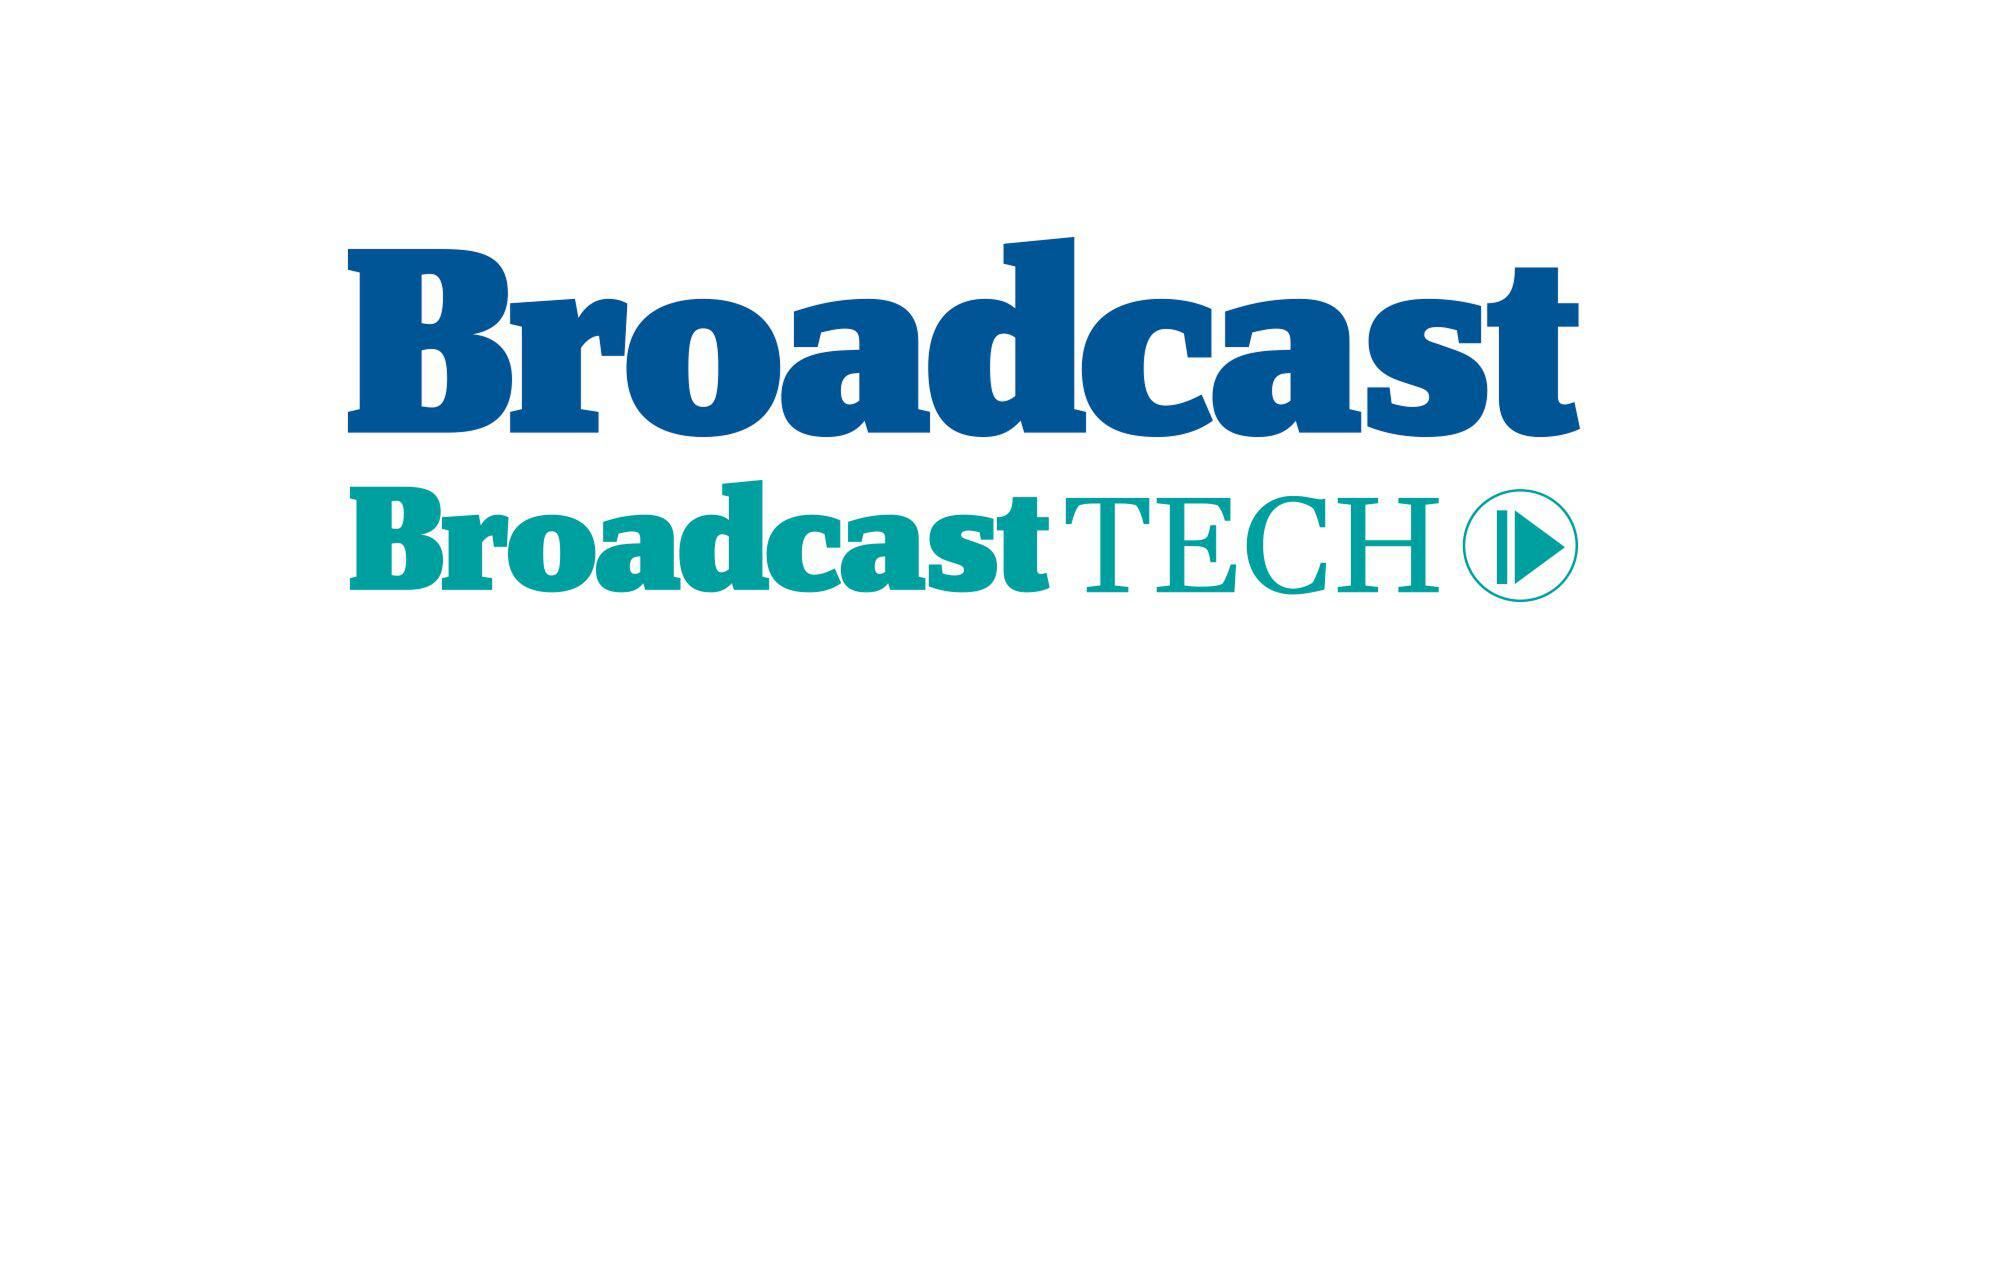 Broadcast tech